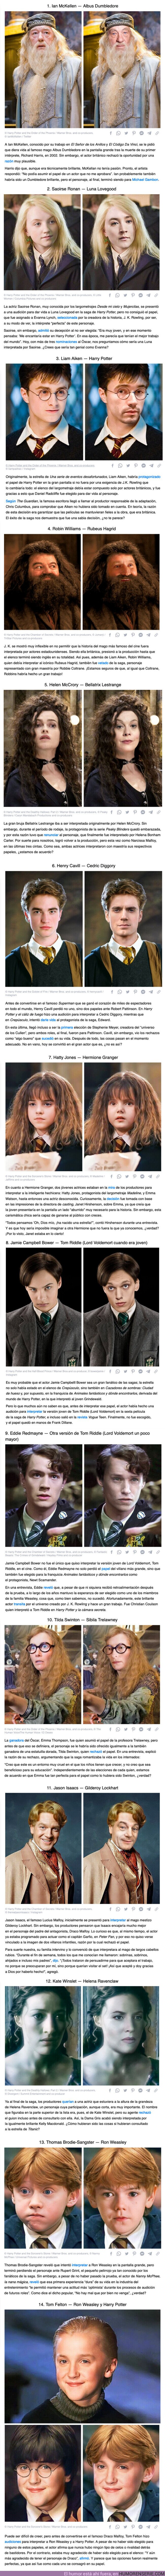 103696 - GALERÍA: 14+ Actores que por poco interpretan a personajes clave en “Harry Potter”